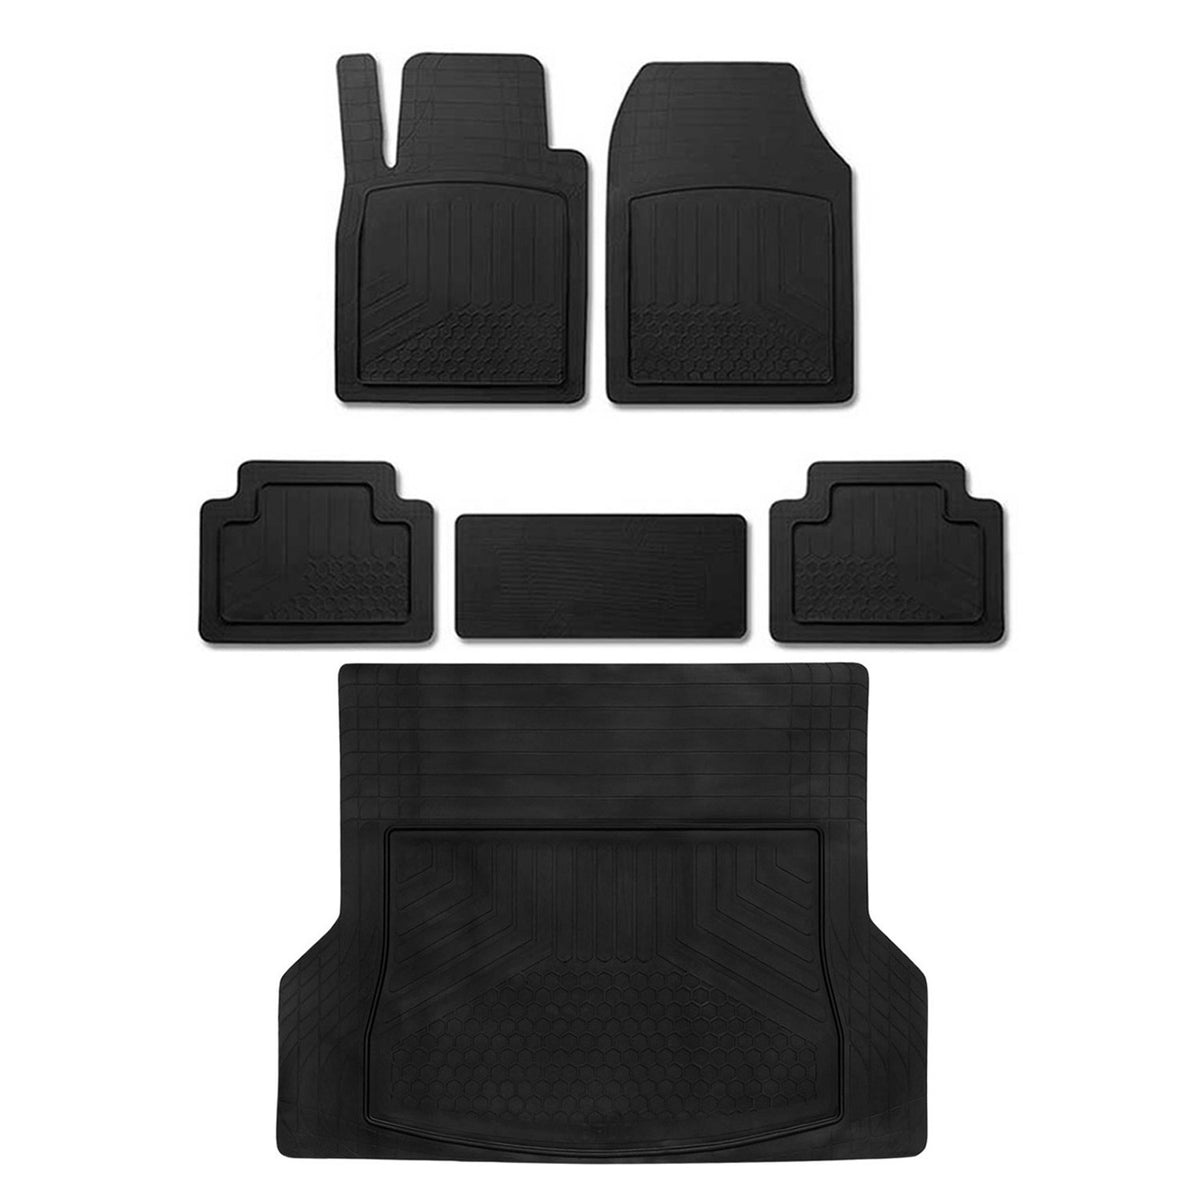 Fußmatten & Kofferraumwanne Set für Ford S-Max Antirutsch Gummi Schwarz